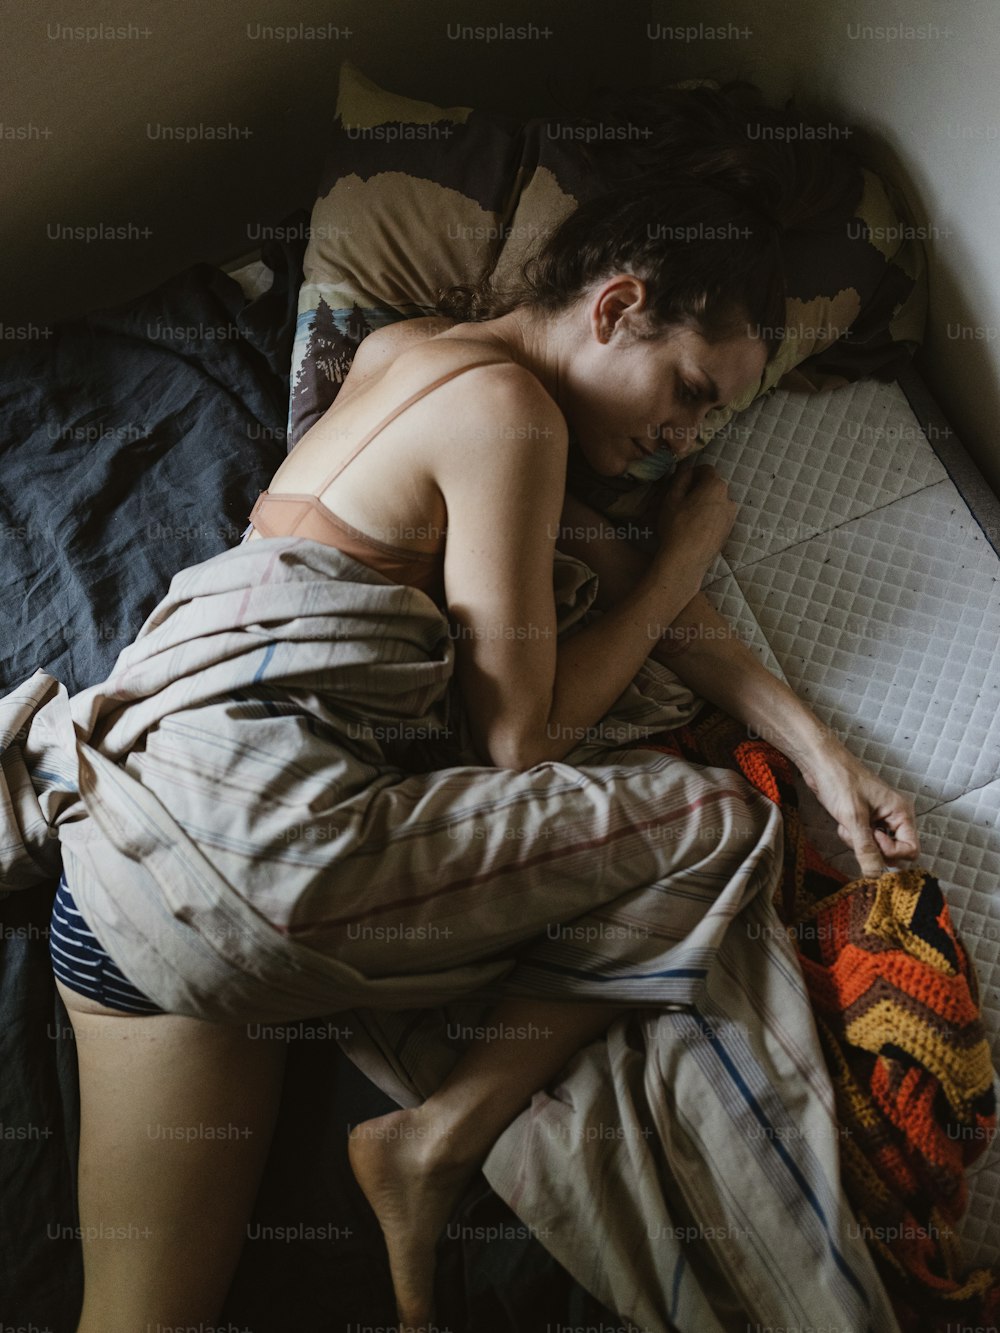 Un homme torse nu dormant sur un lit